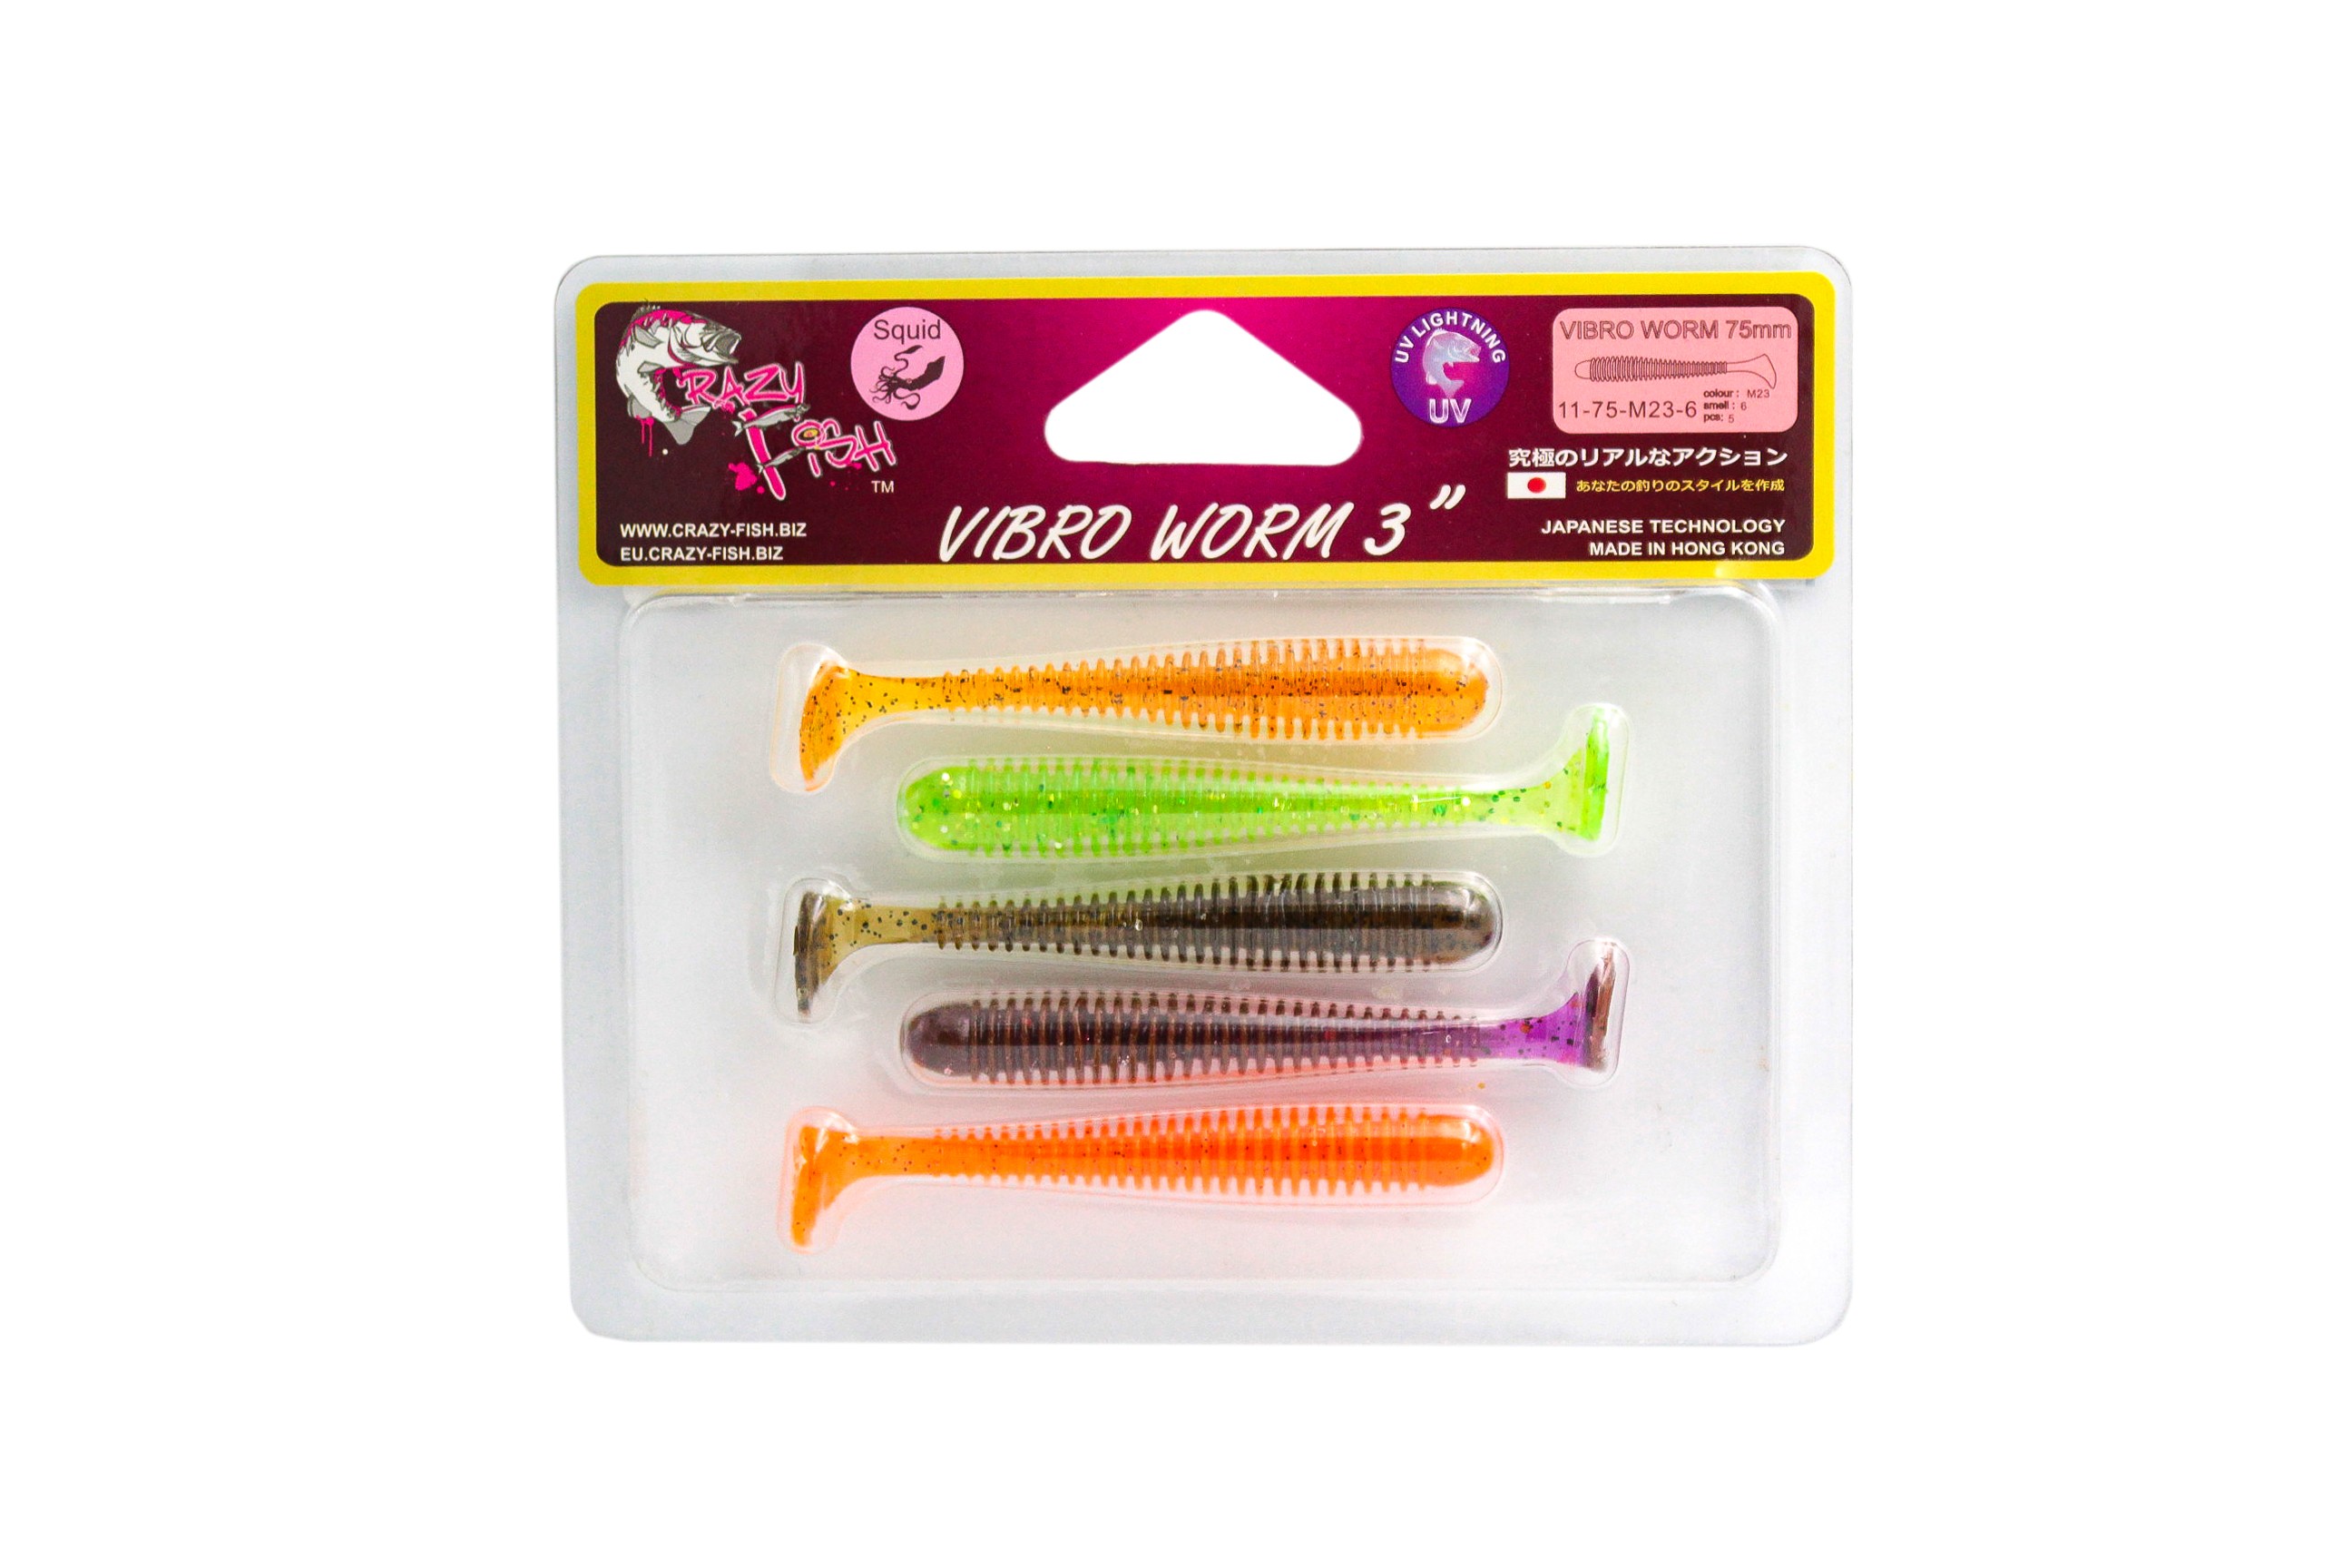 Приманка Crazy Fish Vibro worm 3'' 11-75-M23-6 - фото 1